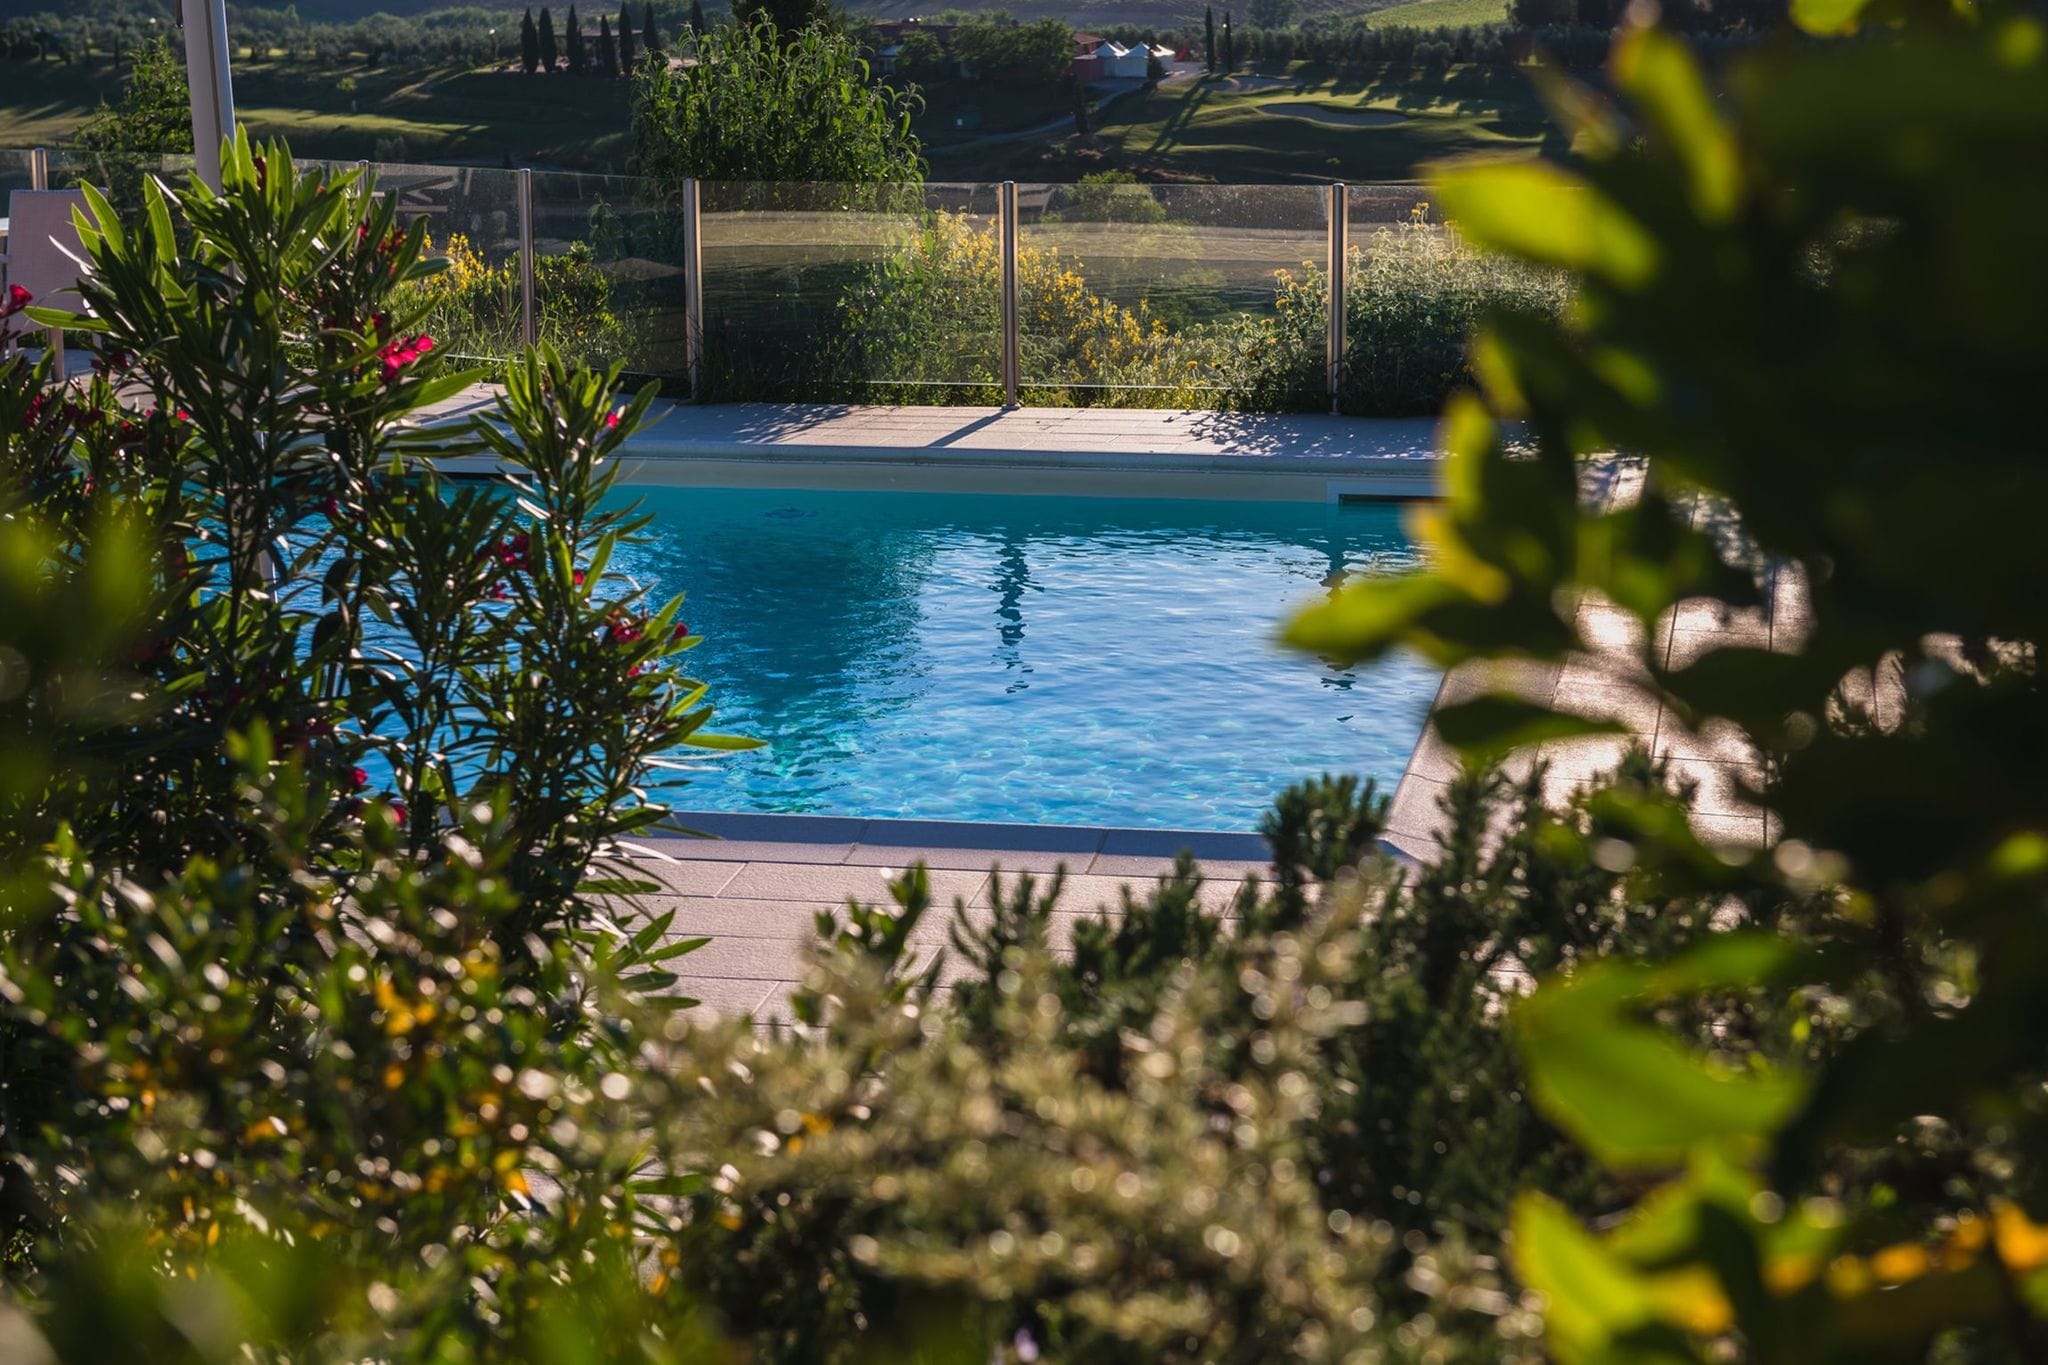 Maison de vacances atypique avec piscine à Florence, Toscane